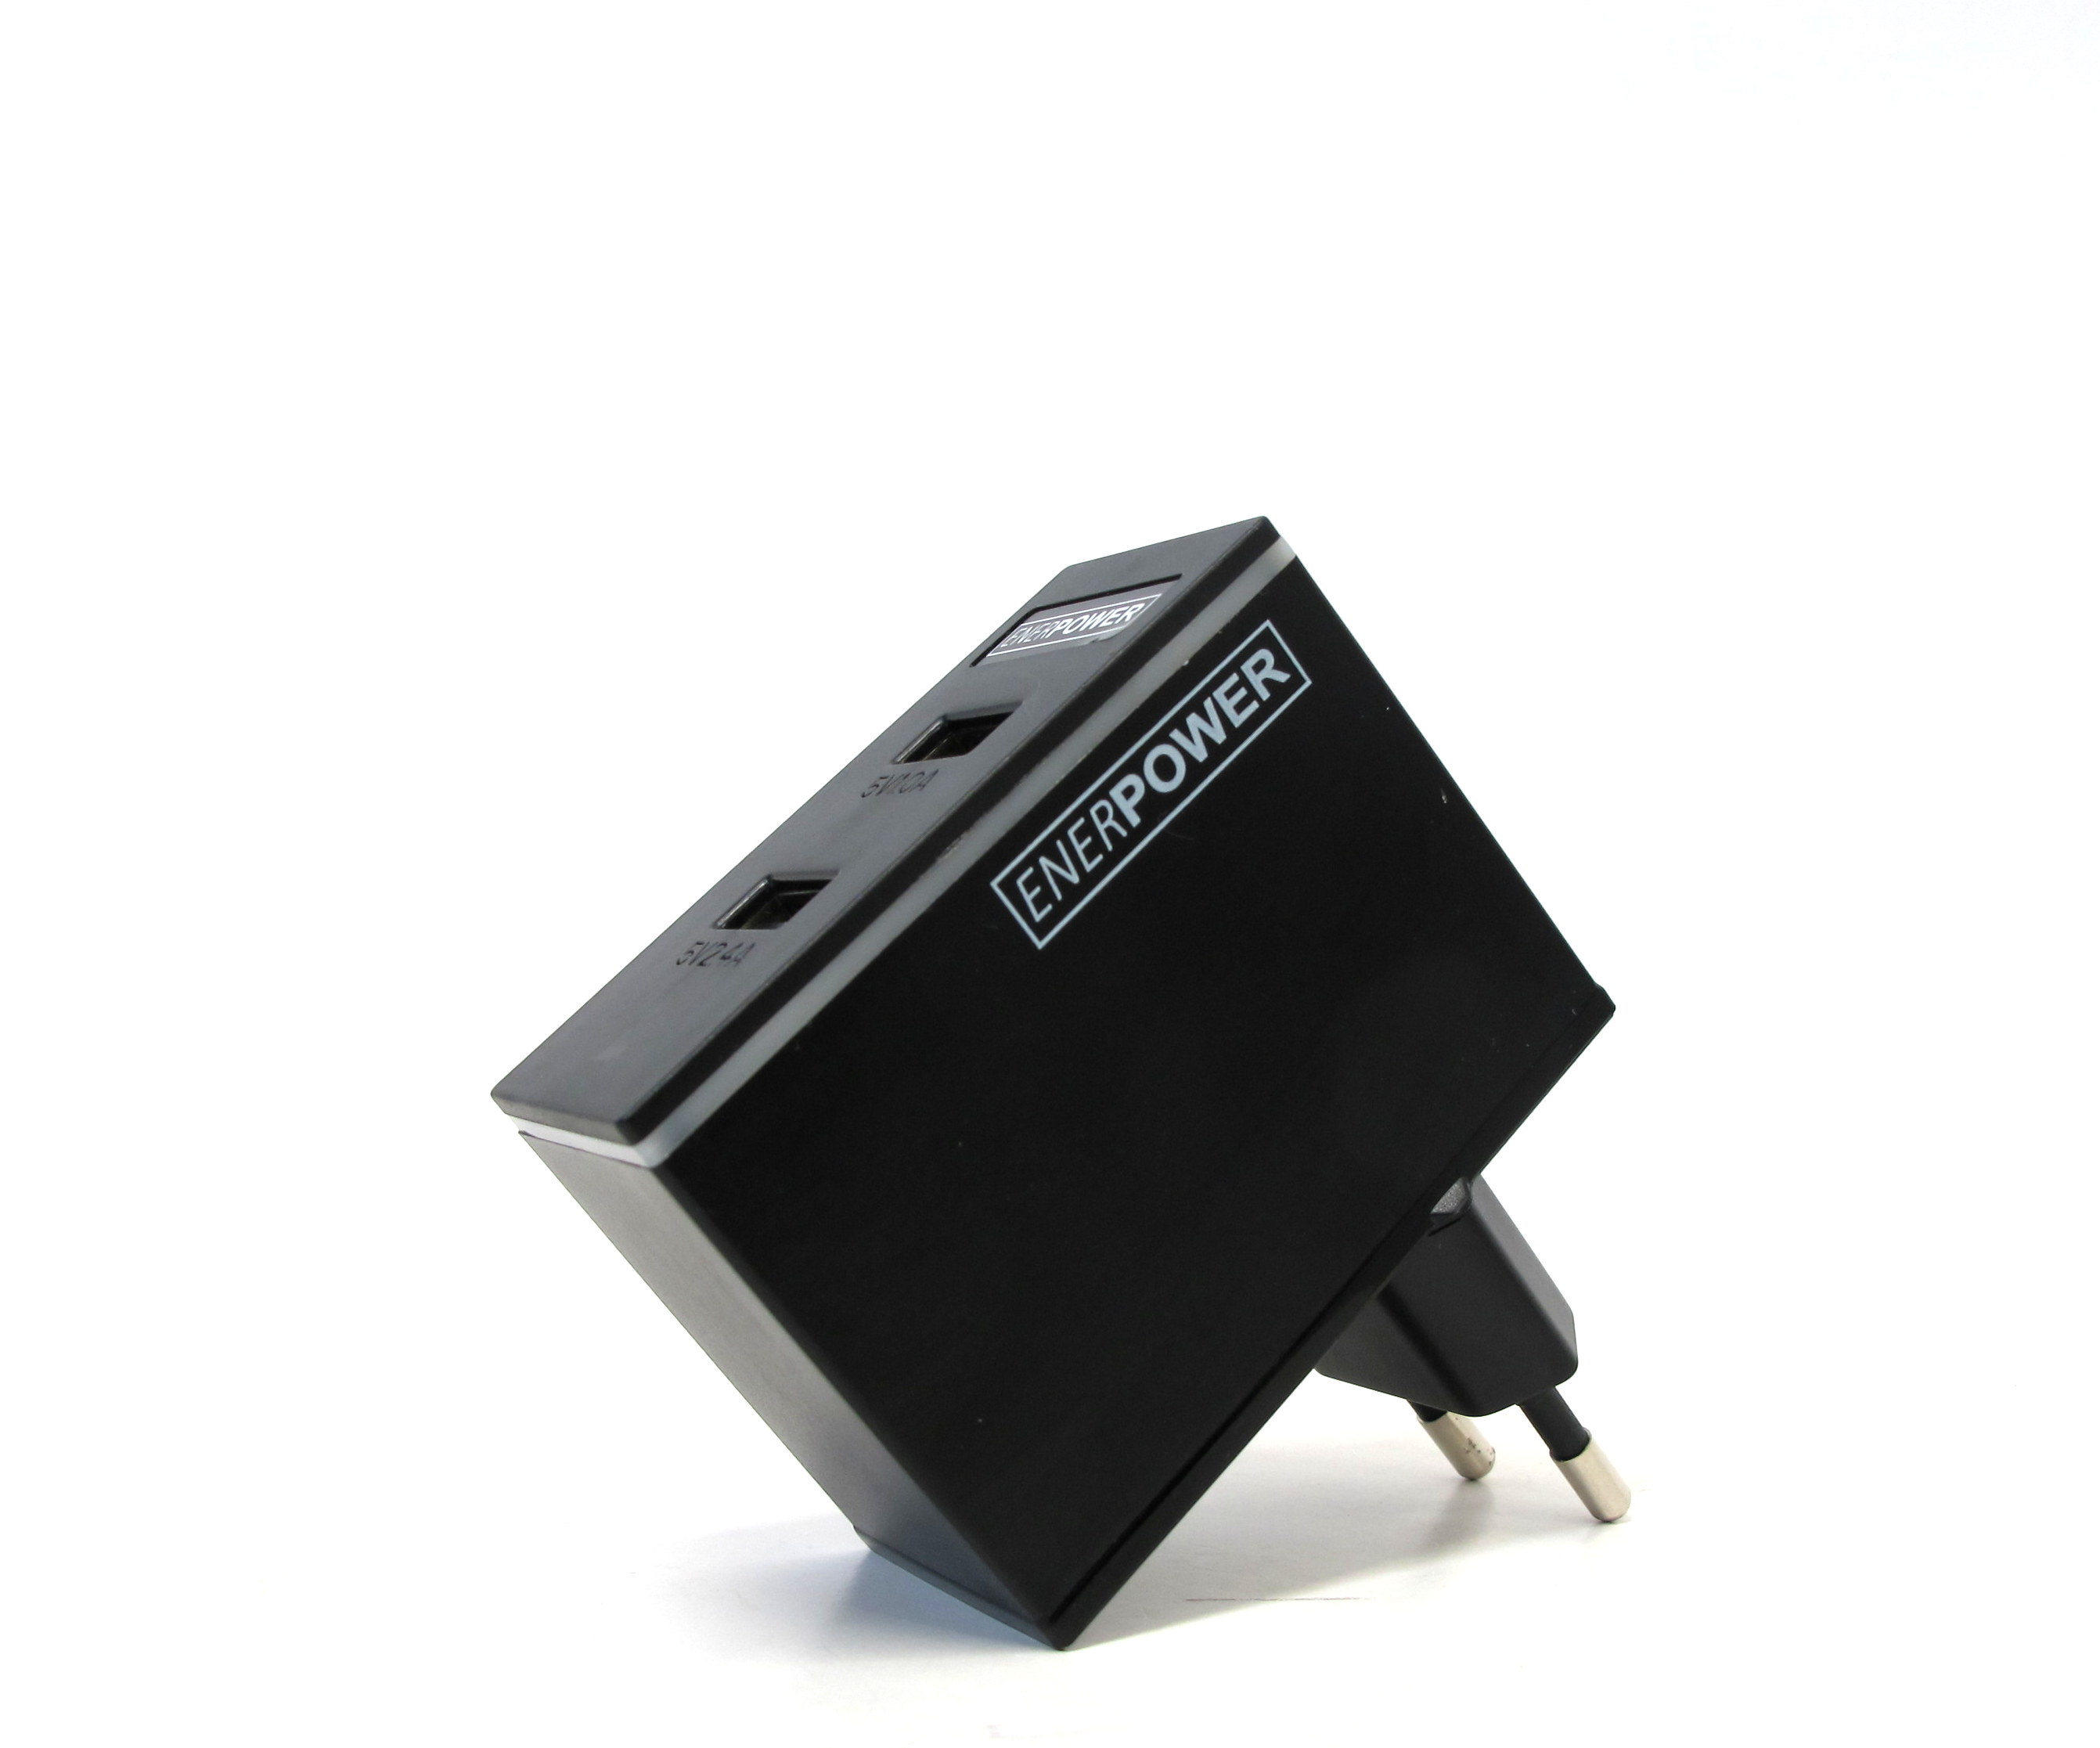 Enerpower EP-L17 USB Netzteil Wand Netz Ladegerät 5V 2A / 1A